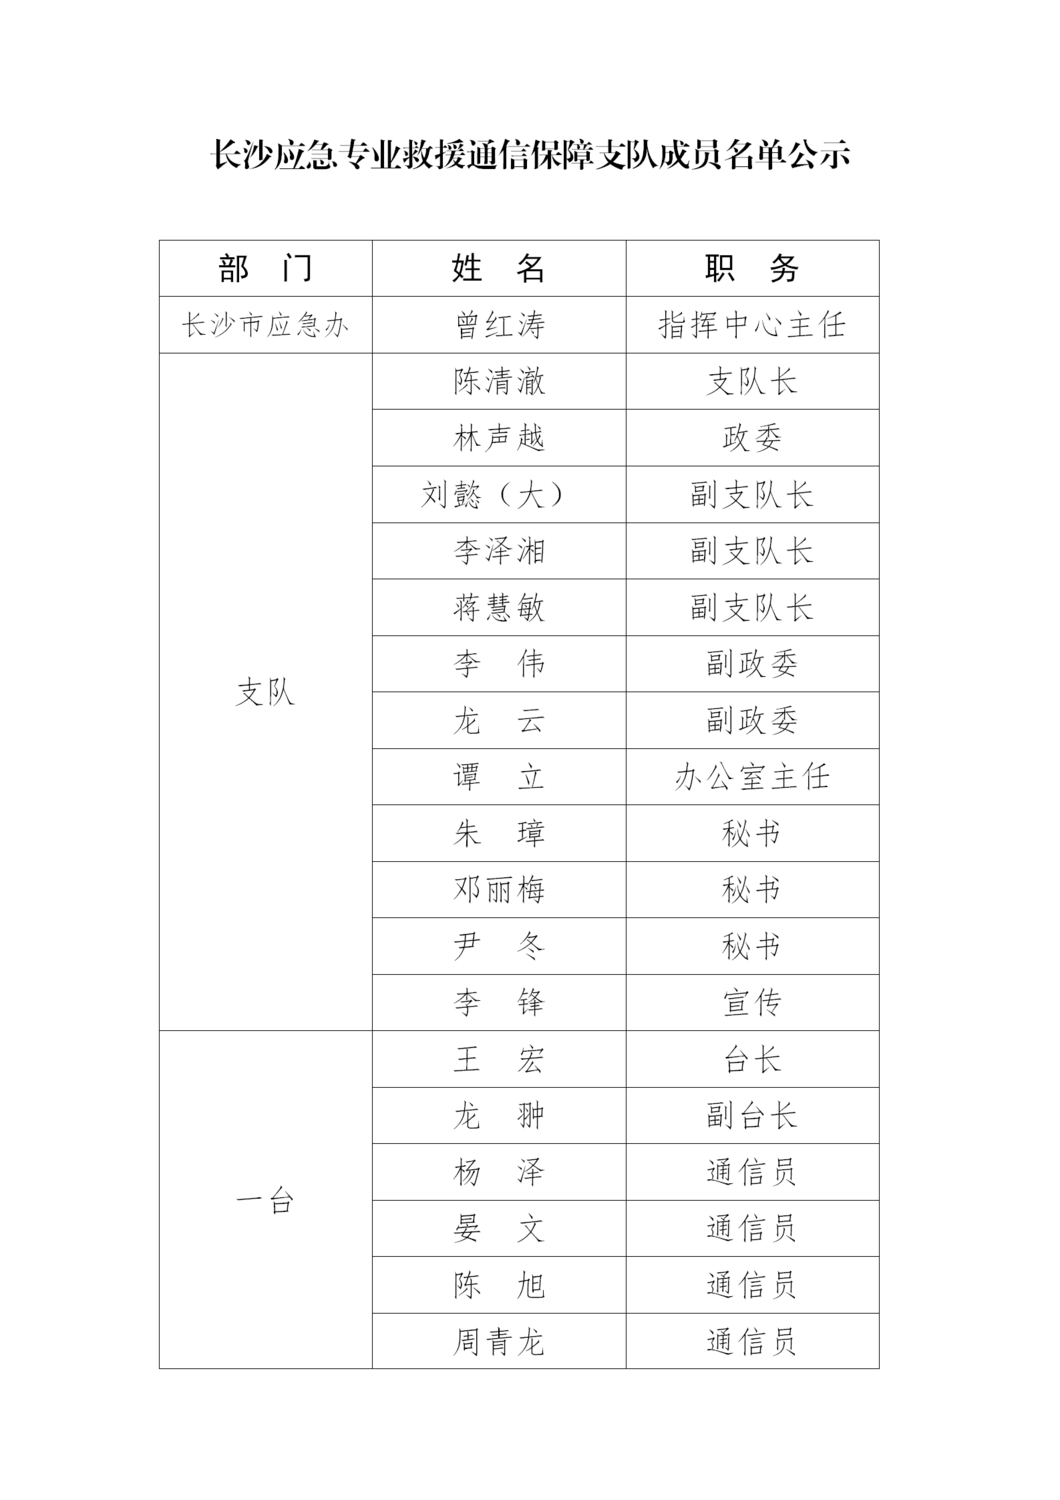 长沙应急专业救援通信保障支队成员名单公示_01.png